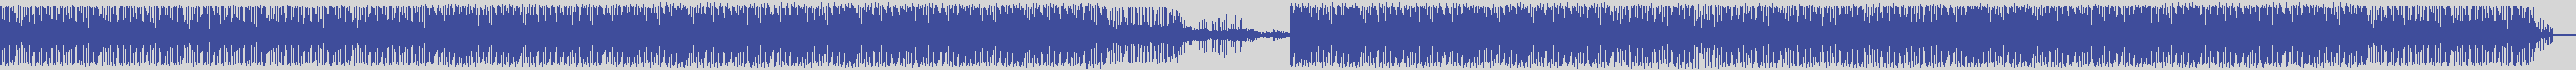 atomic_recordings [AR009] Lorenzo Panico - Pink Im Kino [Original Mix] audio wave form